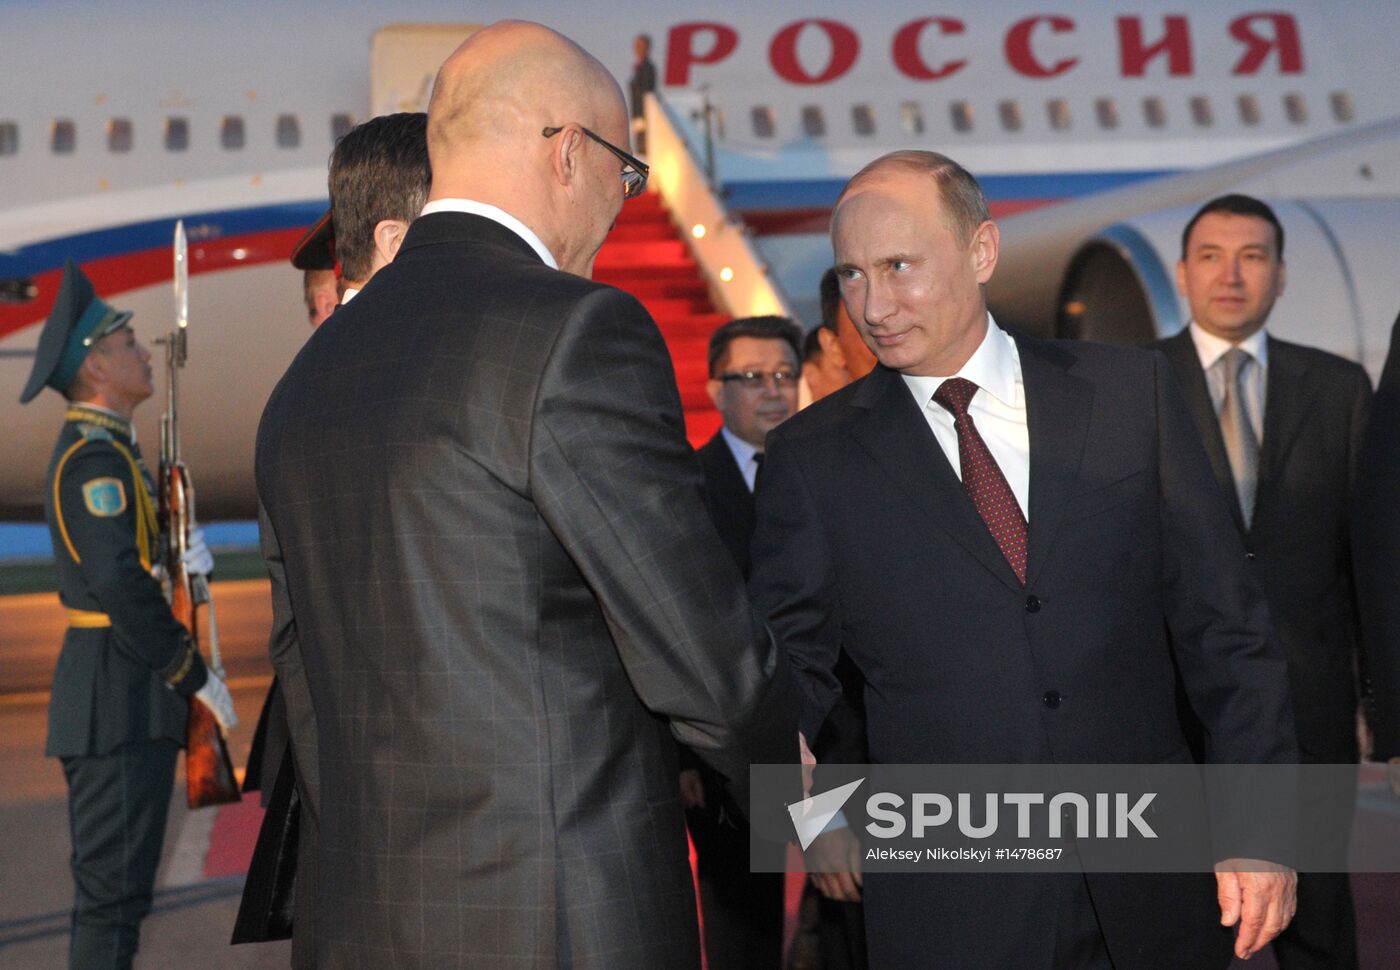 Vladimir Putin's working visit to Kazakhstan